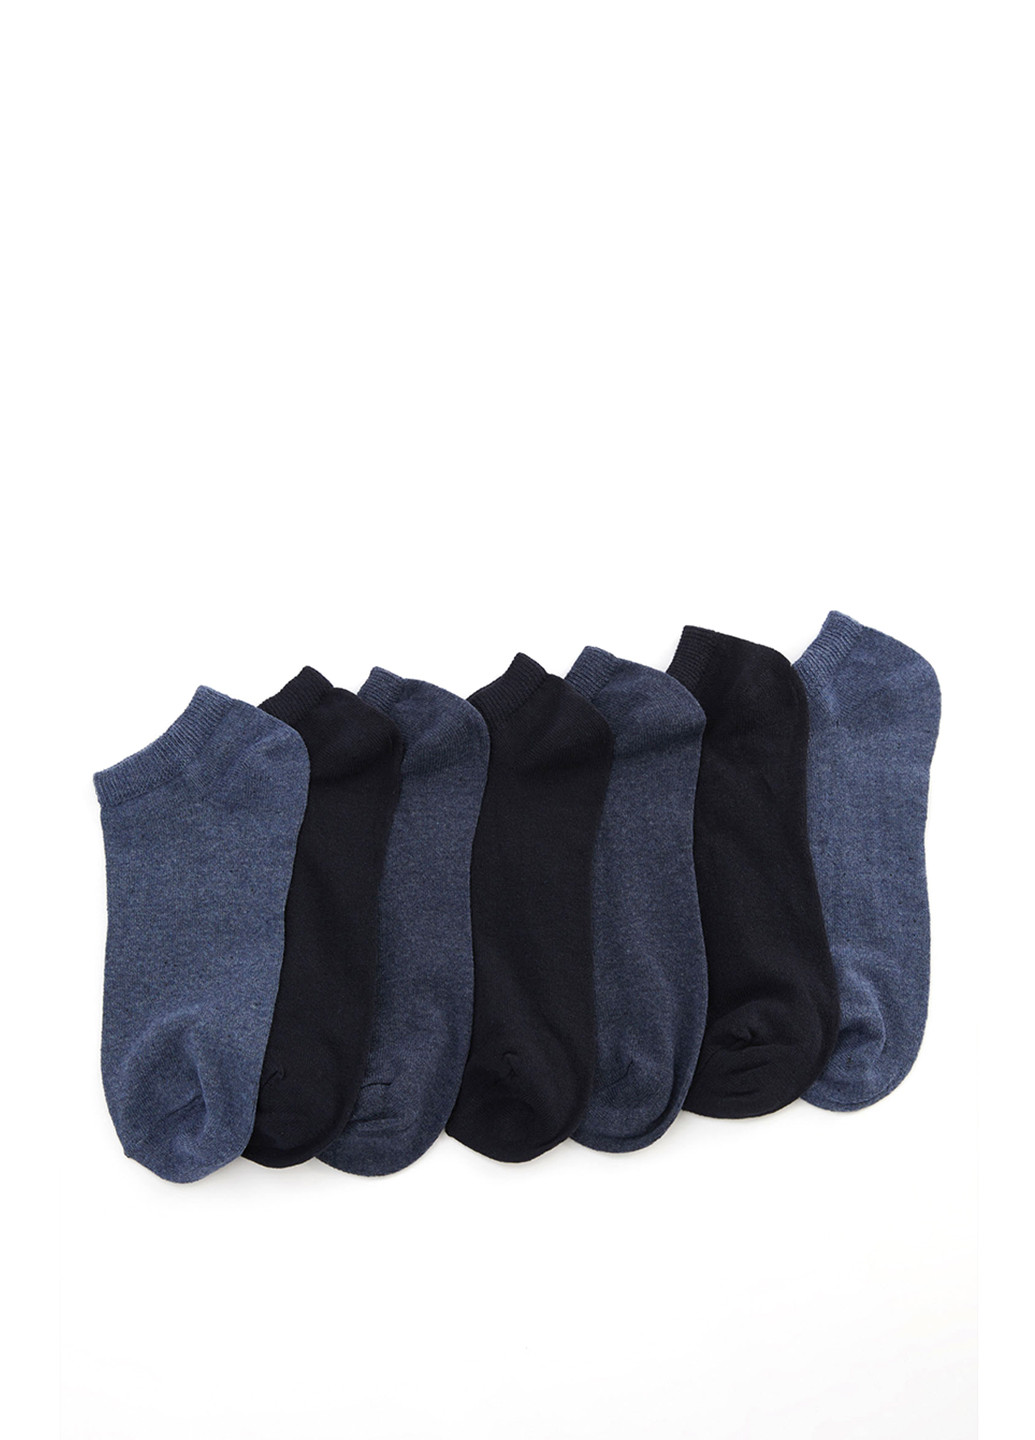 Носки(7шт) DeFacto без уплотненного носка тёмно-синие повседневные